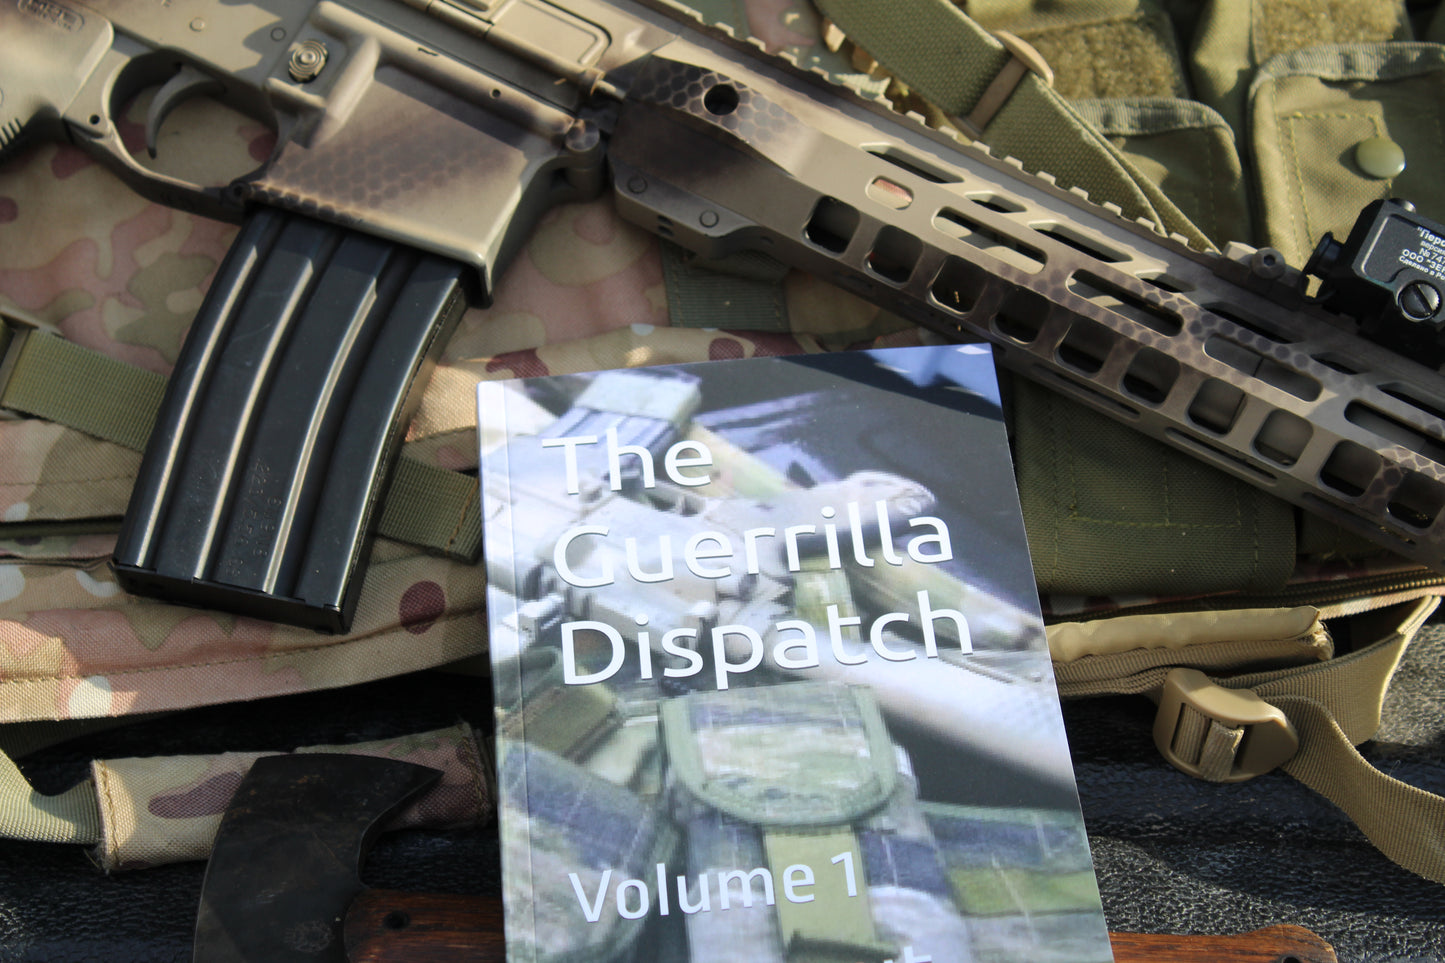 The Guerrilla Dispatch, Vol. 1